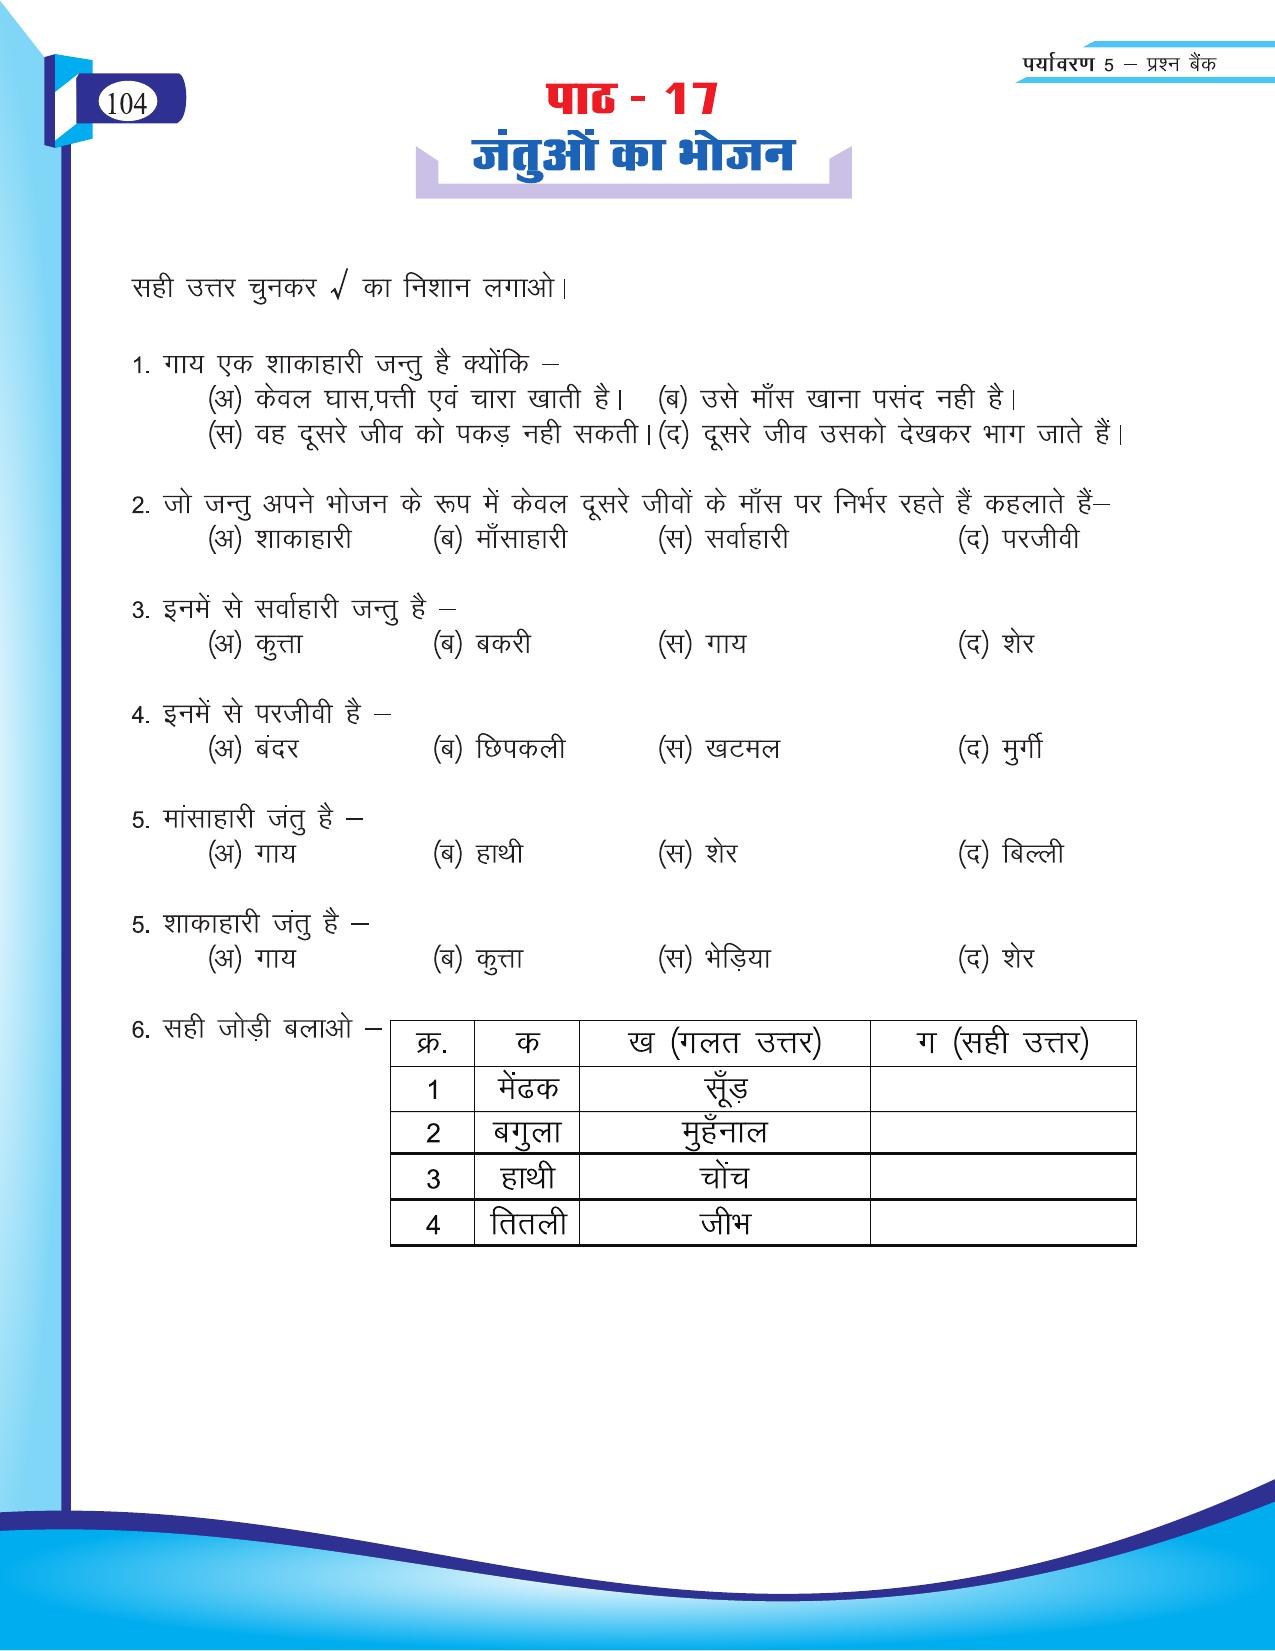 Chhattisgarh Board Class 5 EVS Question Bank 2015-16 - Page 30